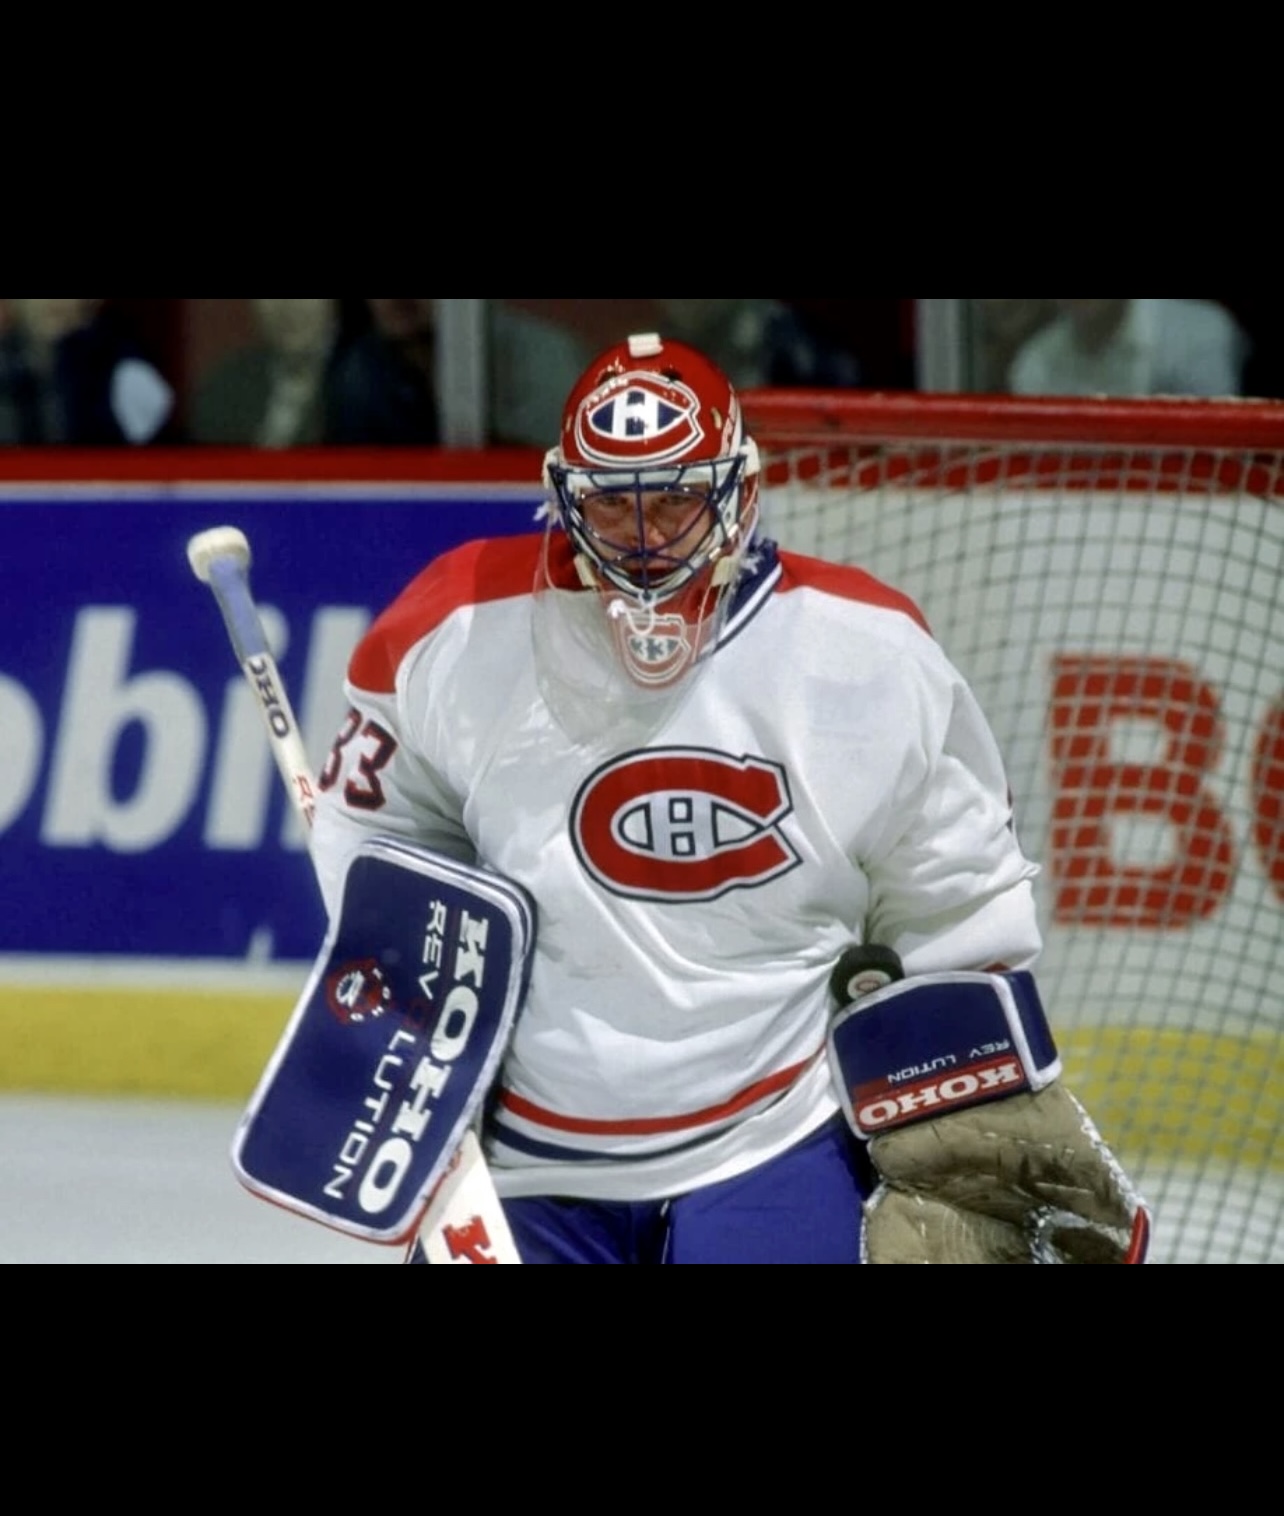 Le gardien des Canadiens de Montréal, Patrick Roy, est prêt à réaliser un arrêt et à être immortalisé !